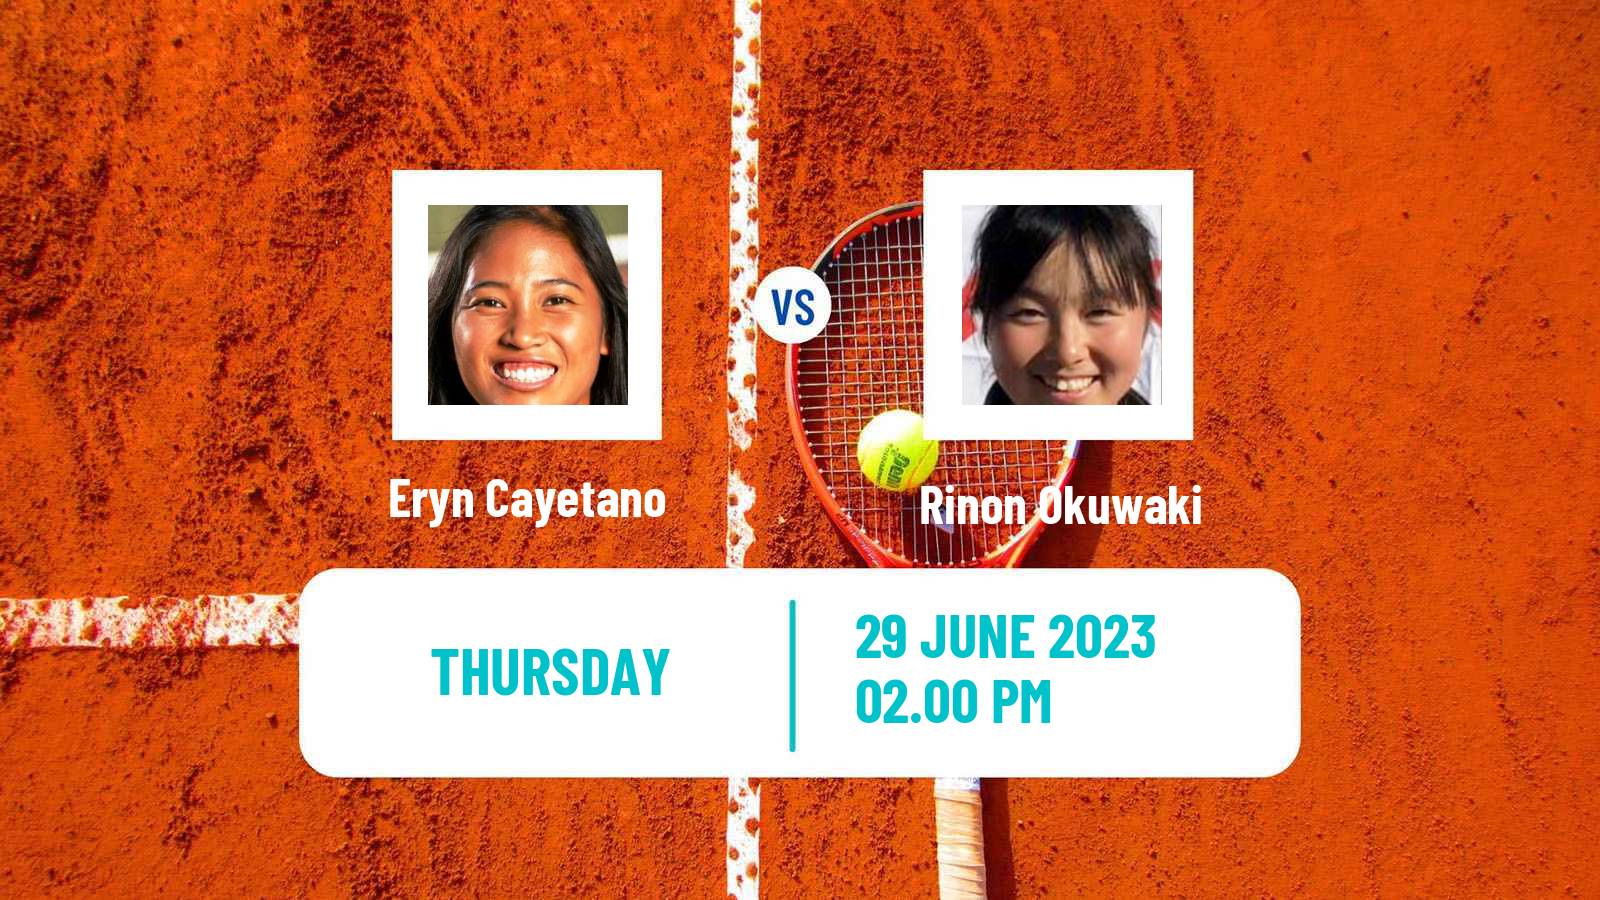 Tennis ITF W15 Irvine Ca Women Eryn Cayetano - Rinon Okuwaki